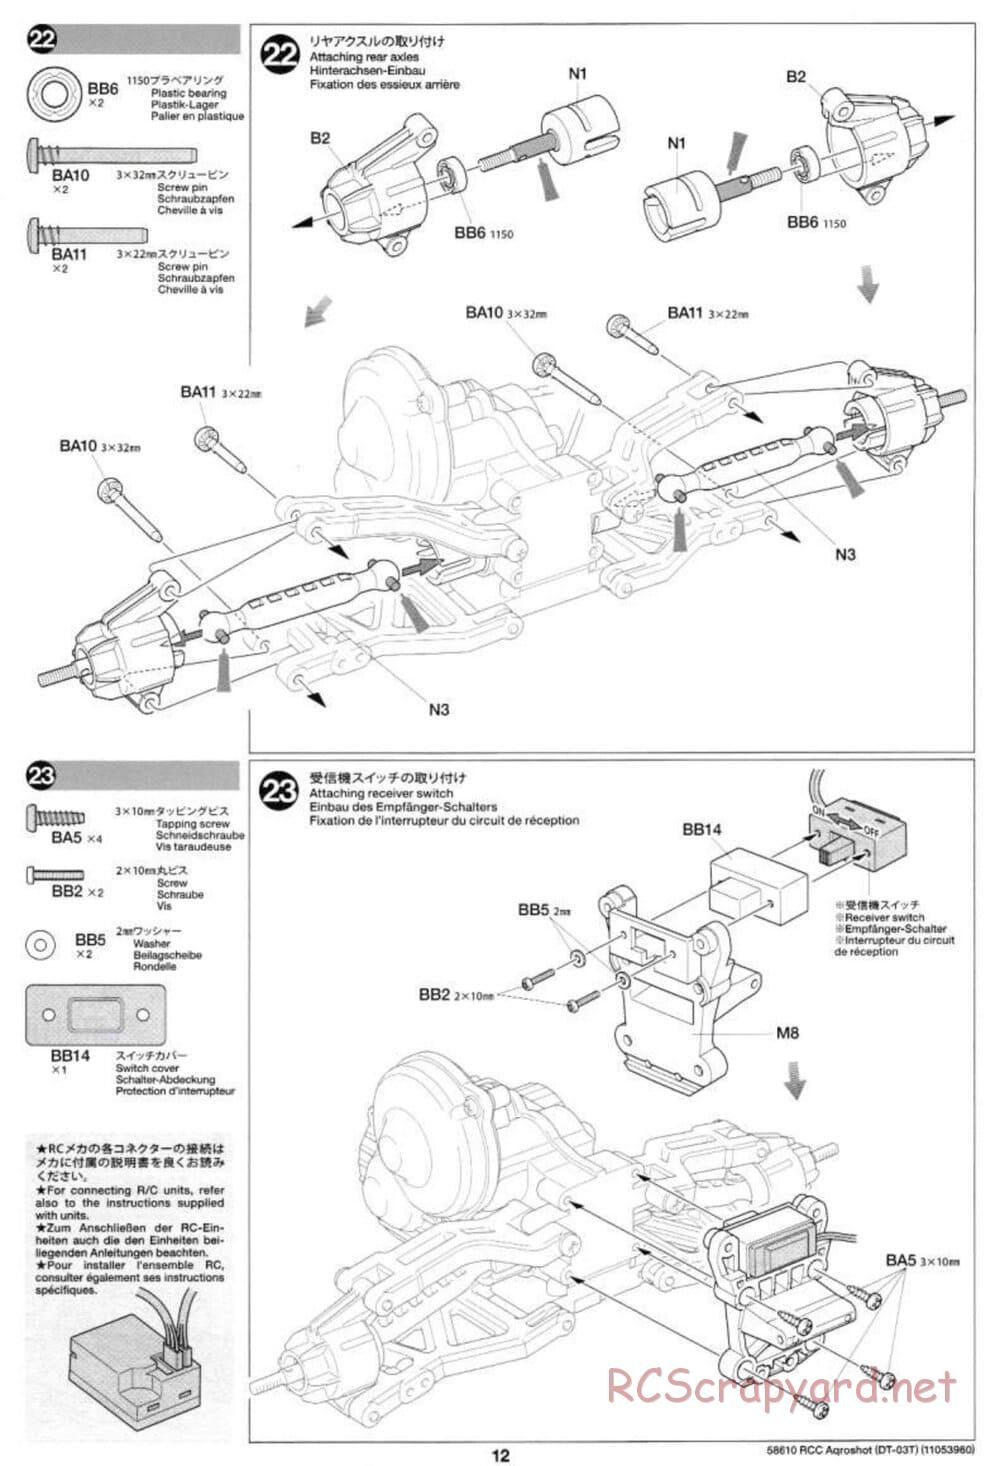 Tamiya - Aqroshot Chassis - Manual - Page 12